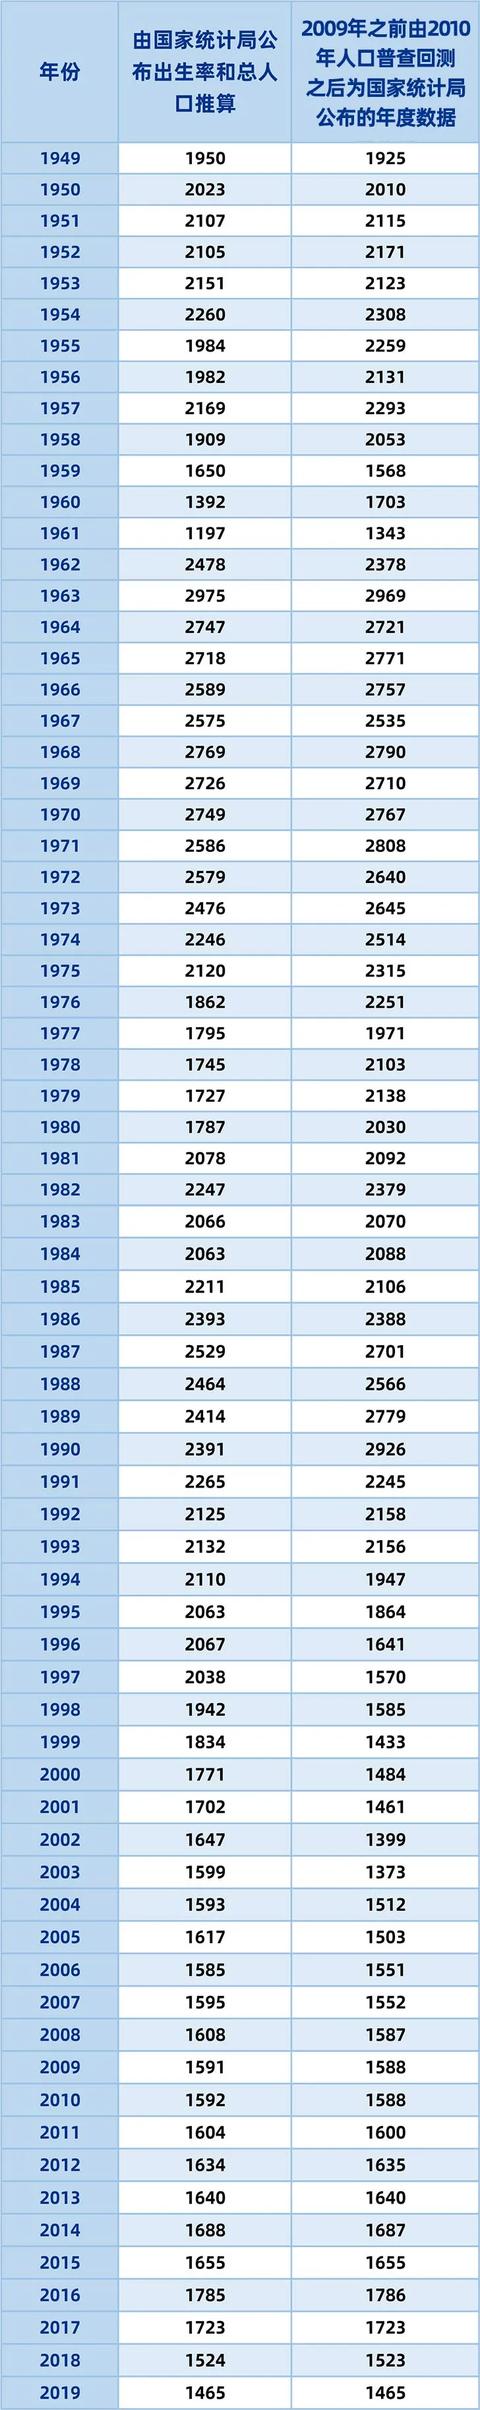 第七次全国人口普查结果，中国历年出生人口数量一览表